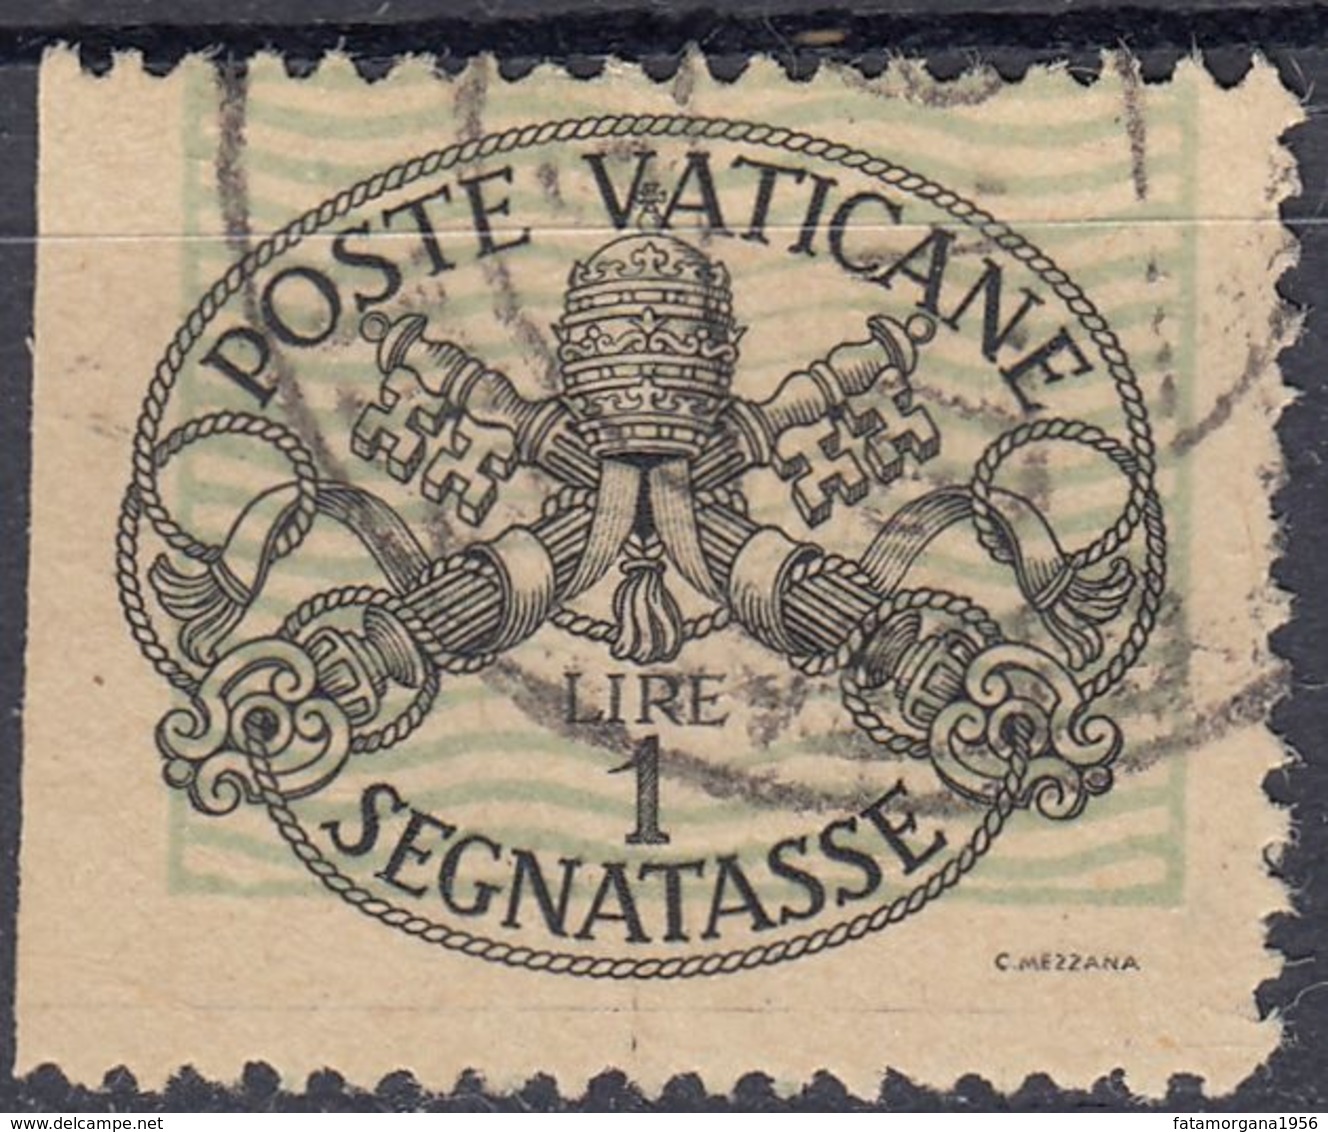 VATICANO - 1945 - Segnatasse Yvert 10a, Varietà Non Dentellata Su Un Lato, Come Da Immagine. - Taxes